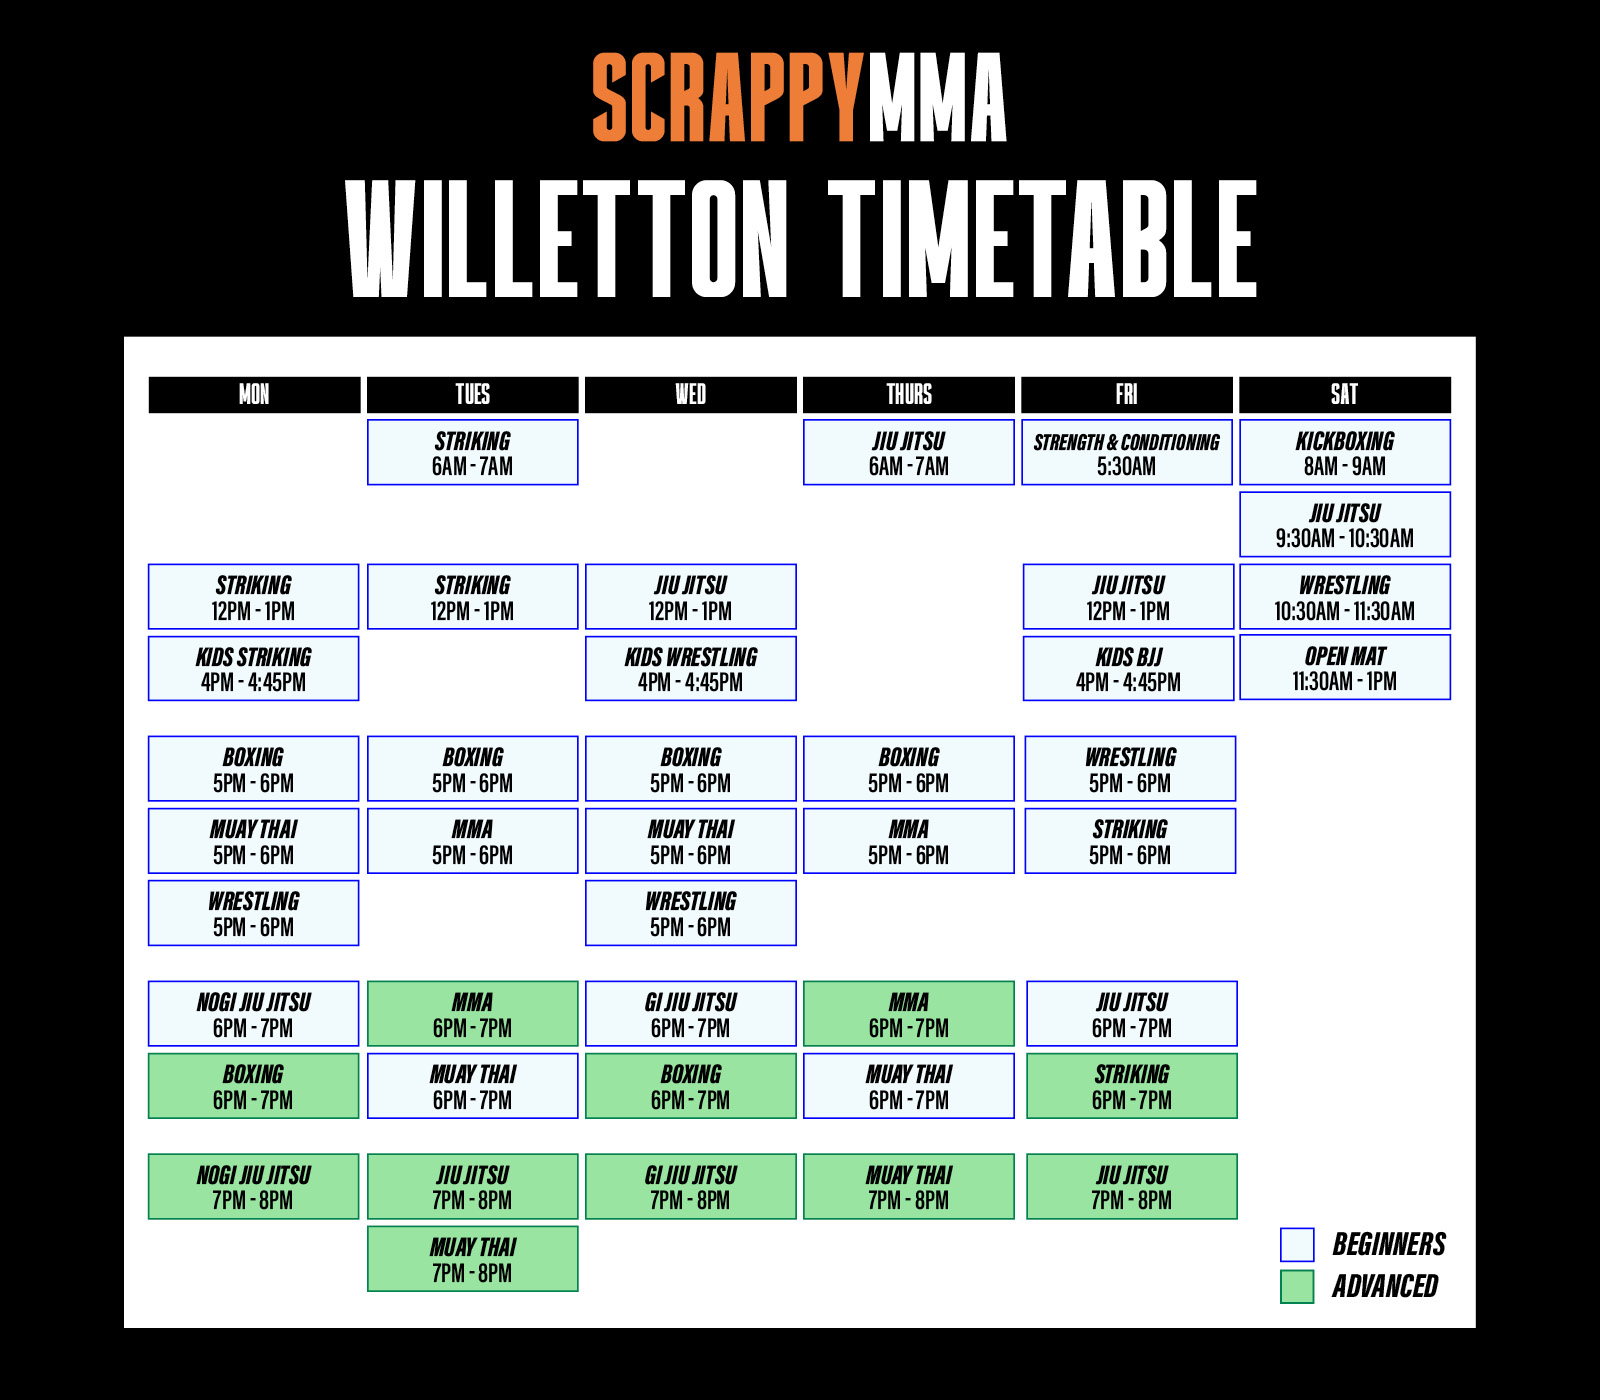 Willeton Timetable